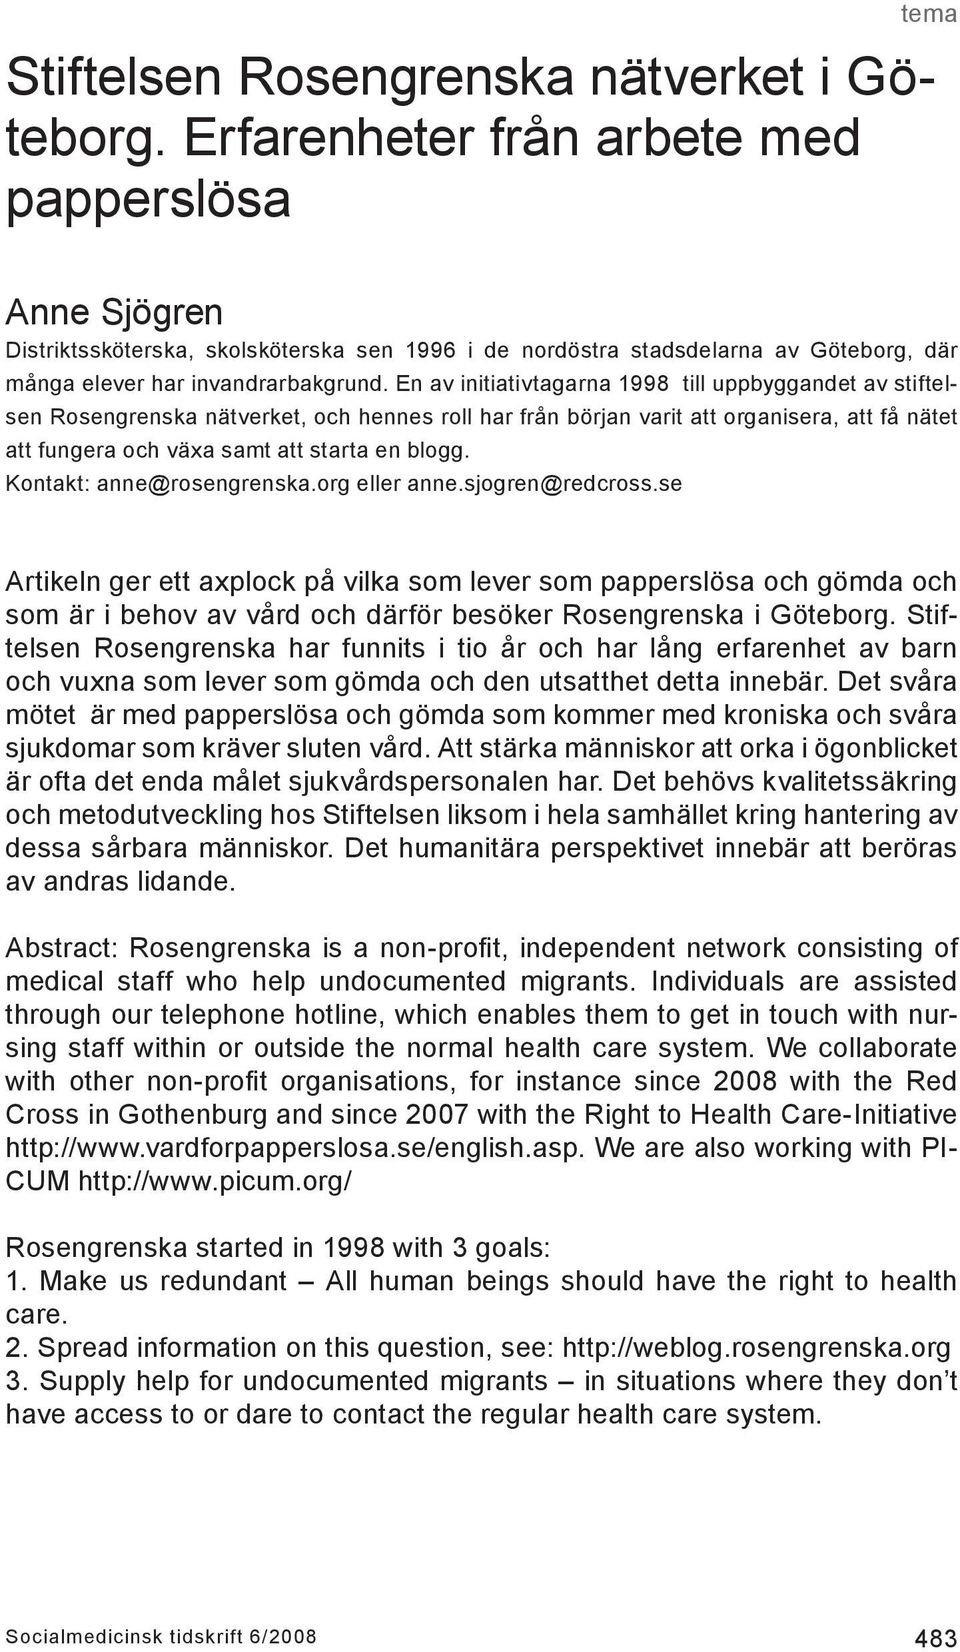 En av initiativtagarna 1998 till uppbyggandet av stiftelsen Rosengrenska nätverket, och hennes roll har från början varit att organisera, att få nätet att fungera och växa samt att starta en blogg.